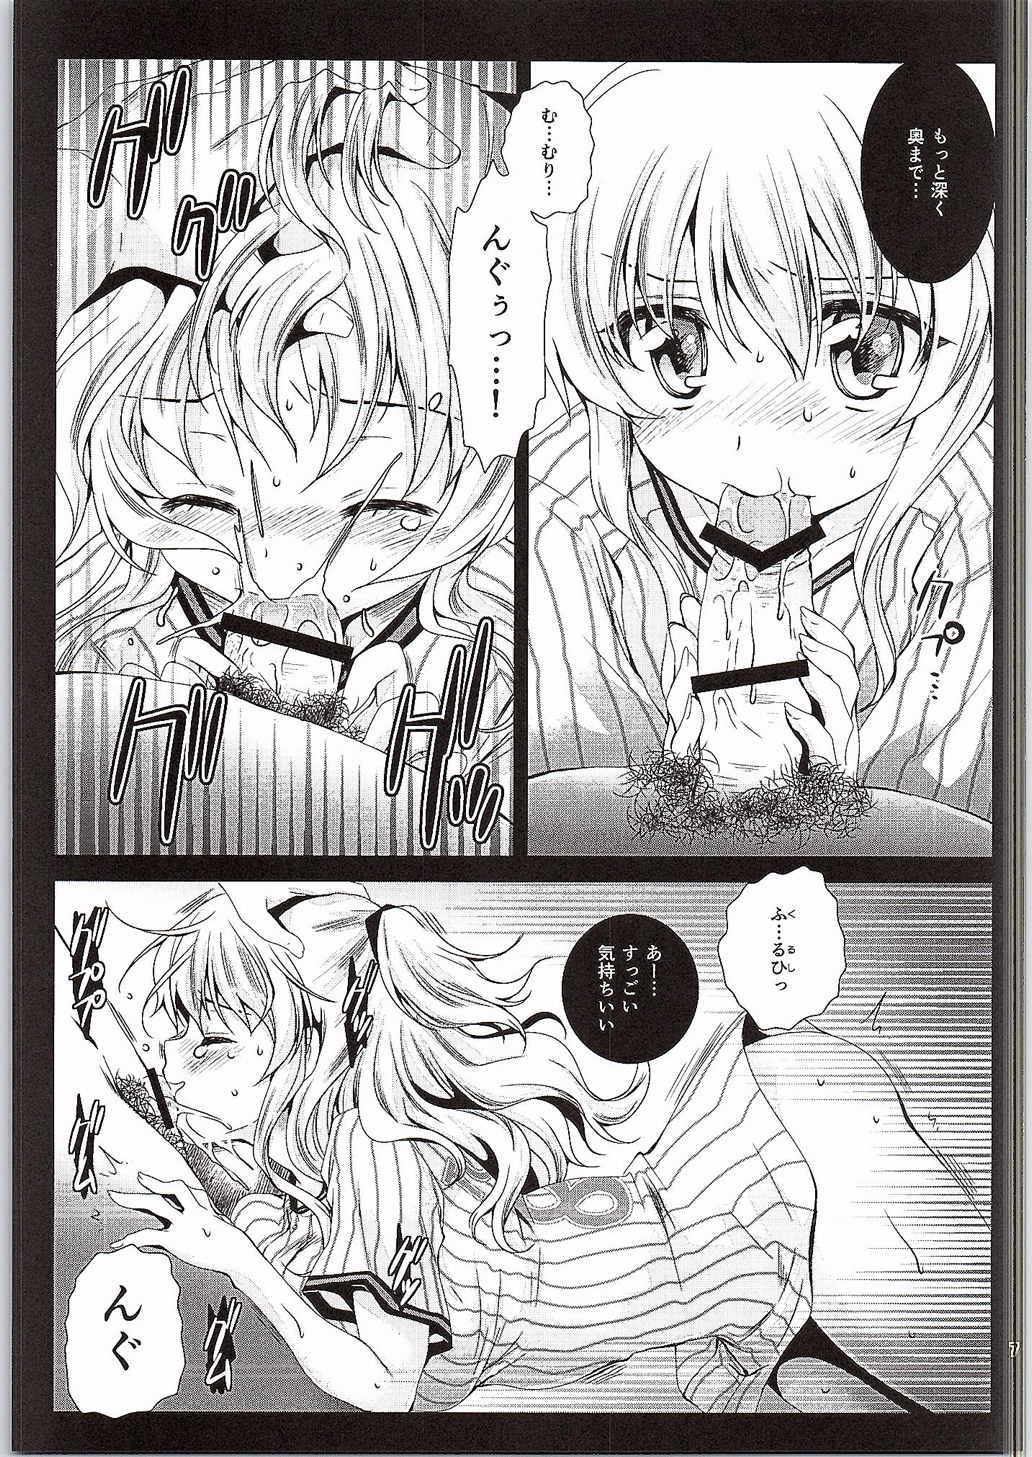 Story Tomori Uni - Charlotte Asslicking - Page 6